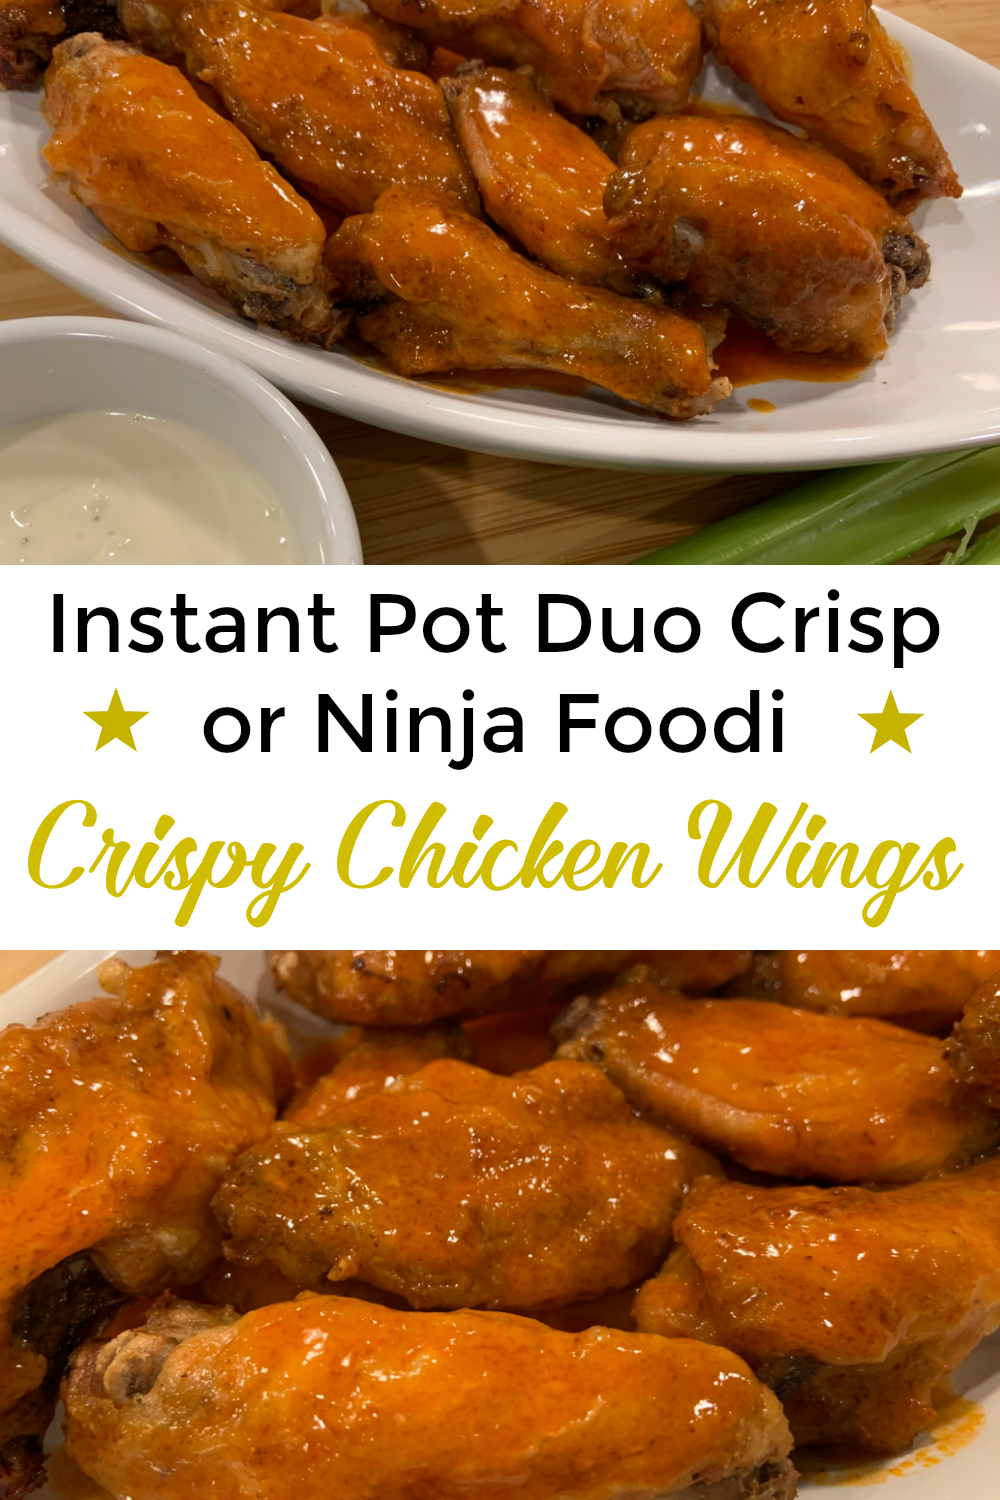 https://instantpotcooking.com/wp-content/uploads/2019/11/Instant-Pot-Duo-Crisp-or-Ninja-Foodi-Crispy-Chicken-Wings-.jpg